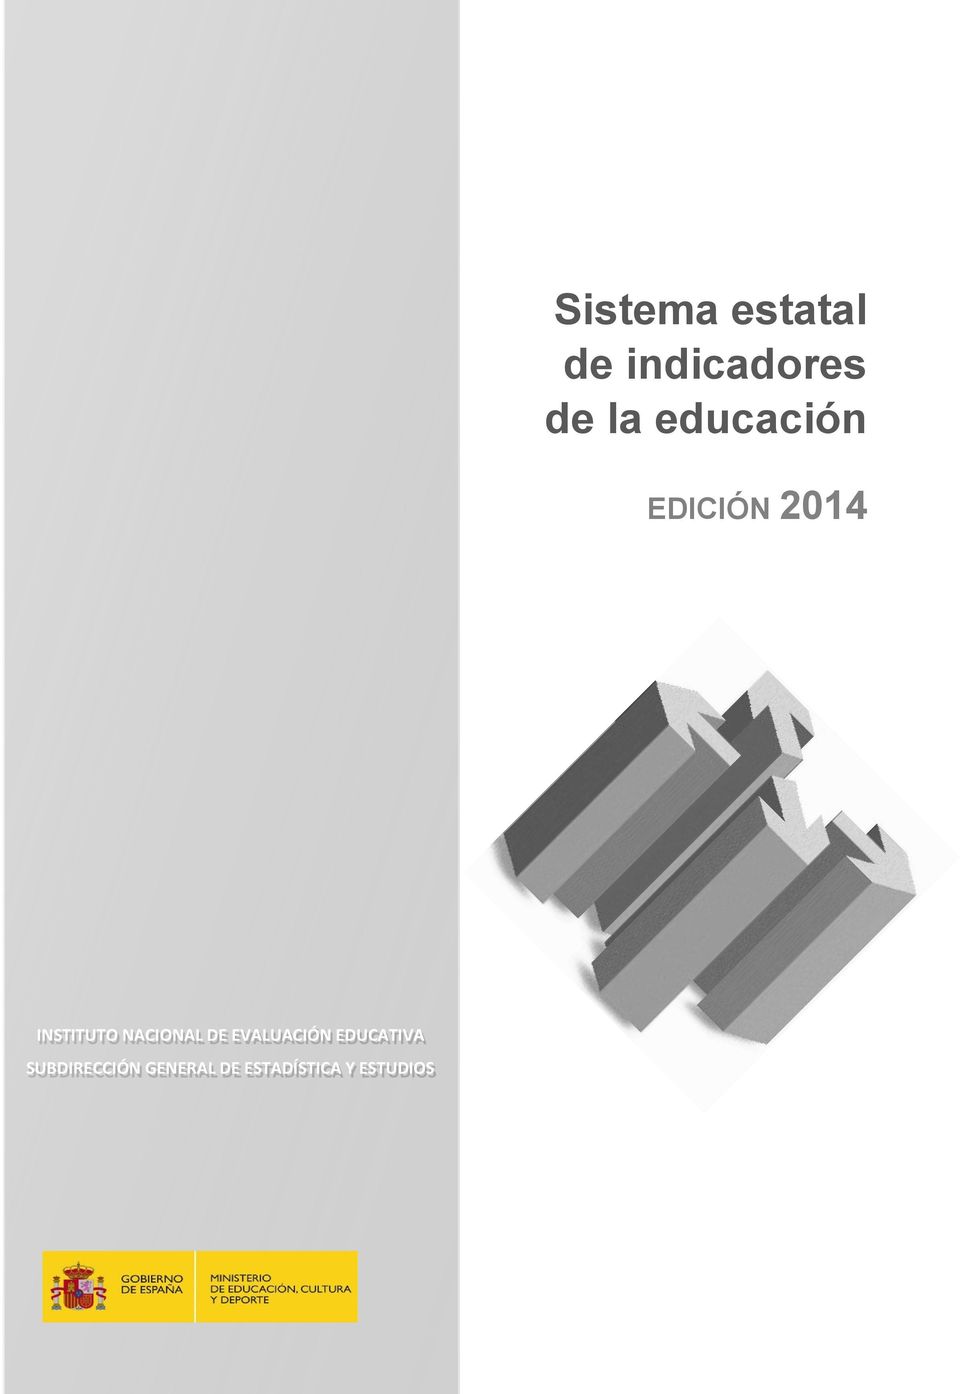 NACIONAL DE EVALUACIÓN EDUCATIVA